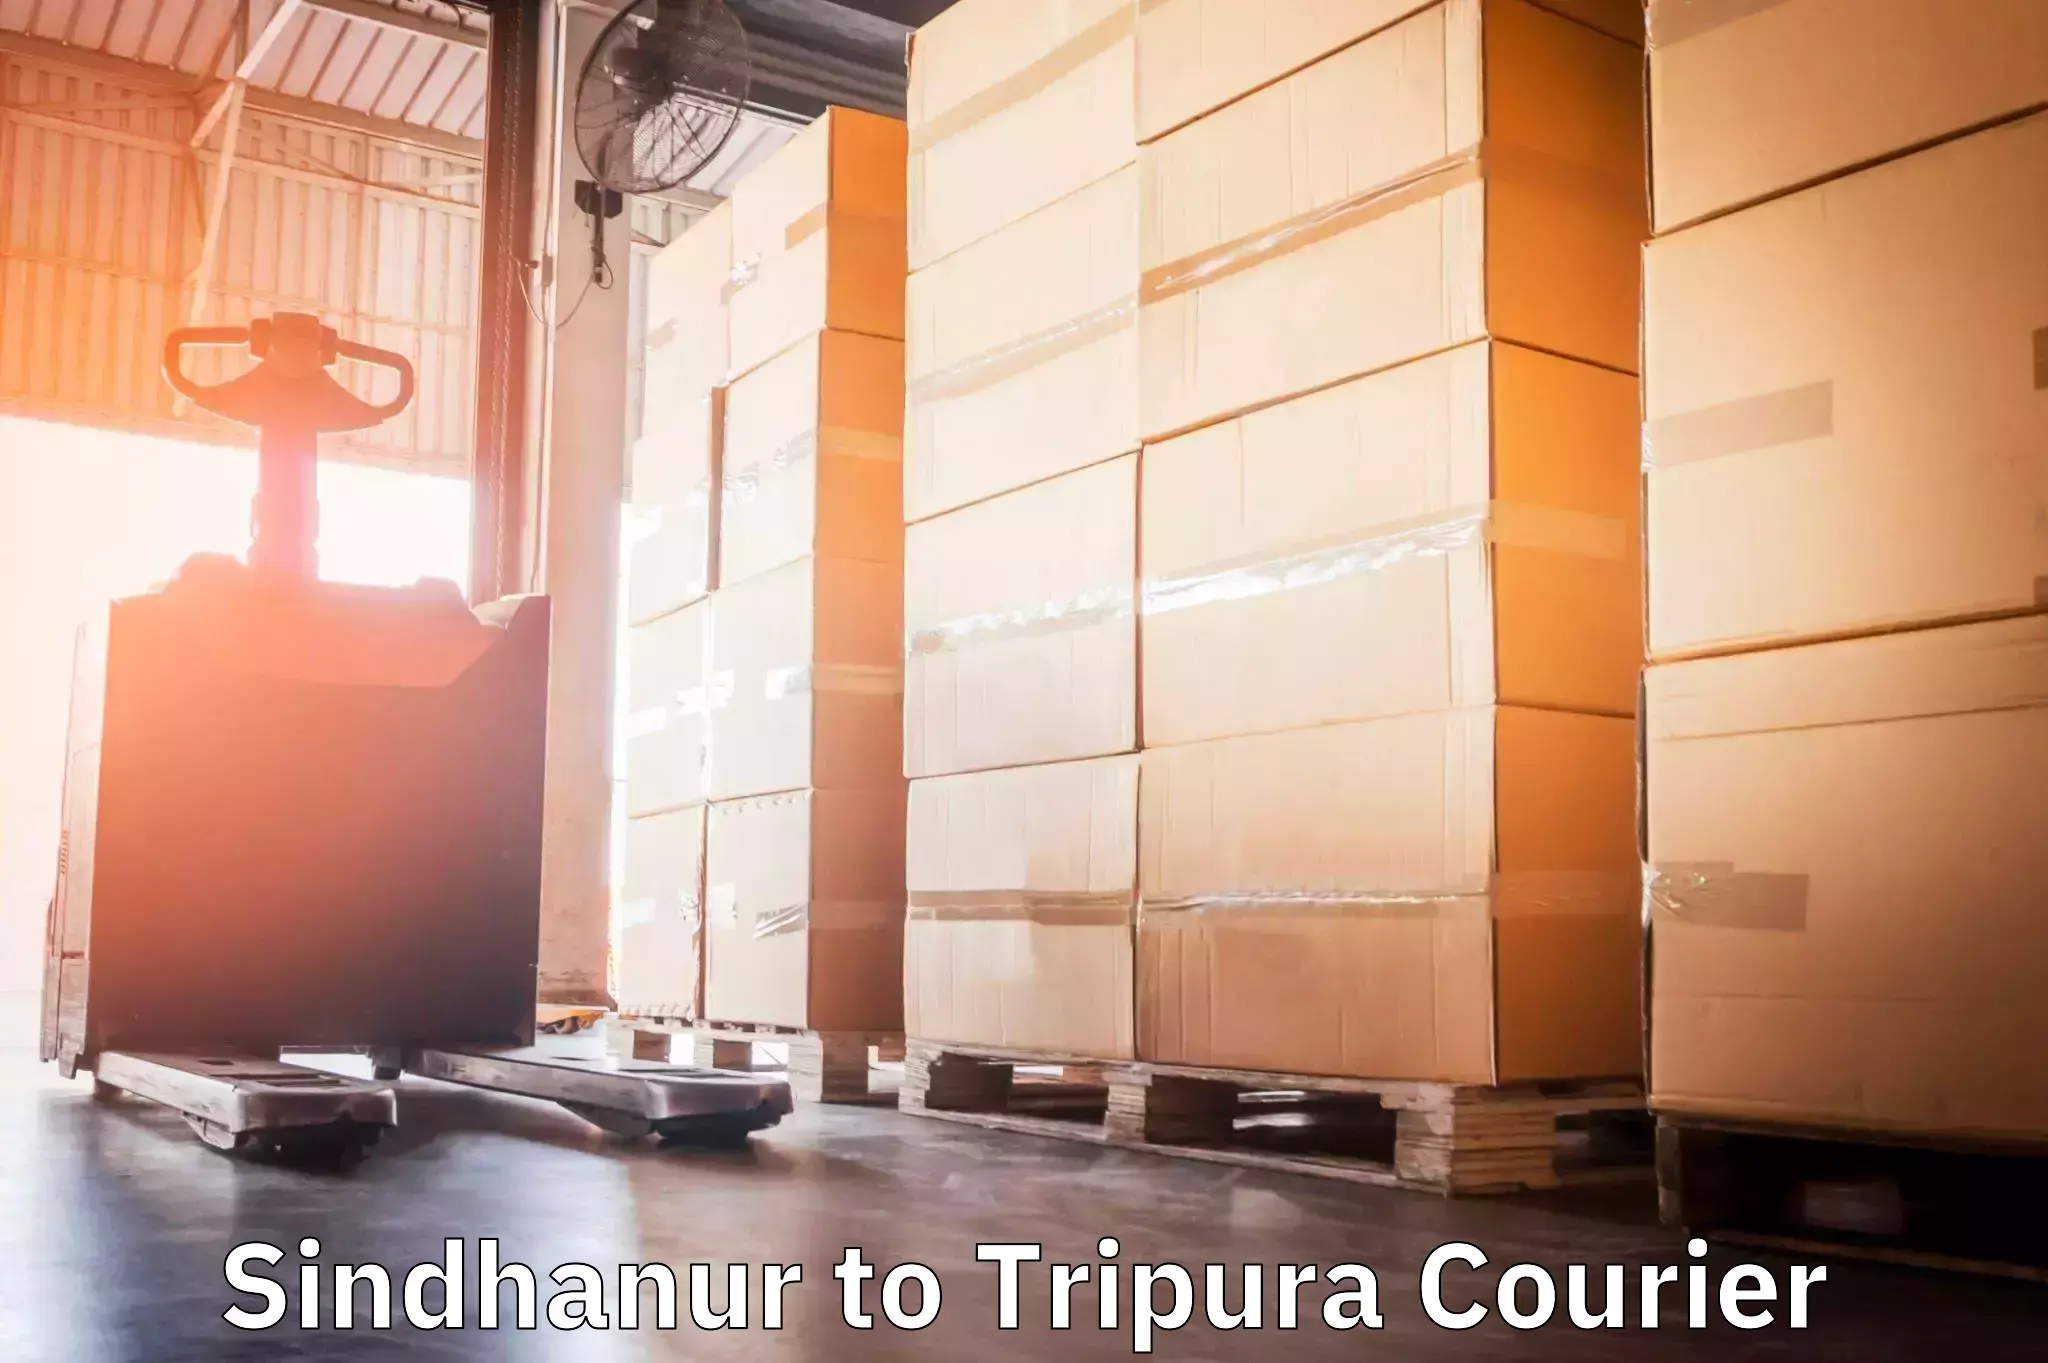 Urgent courier needs Sindhanur to Udaipur Tripura